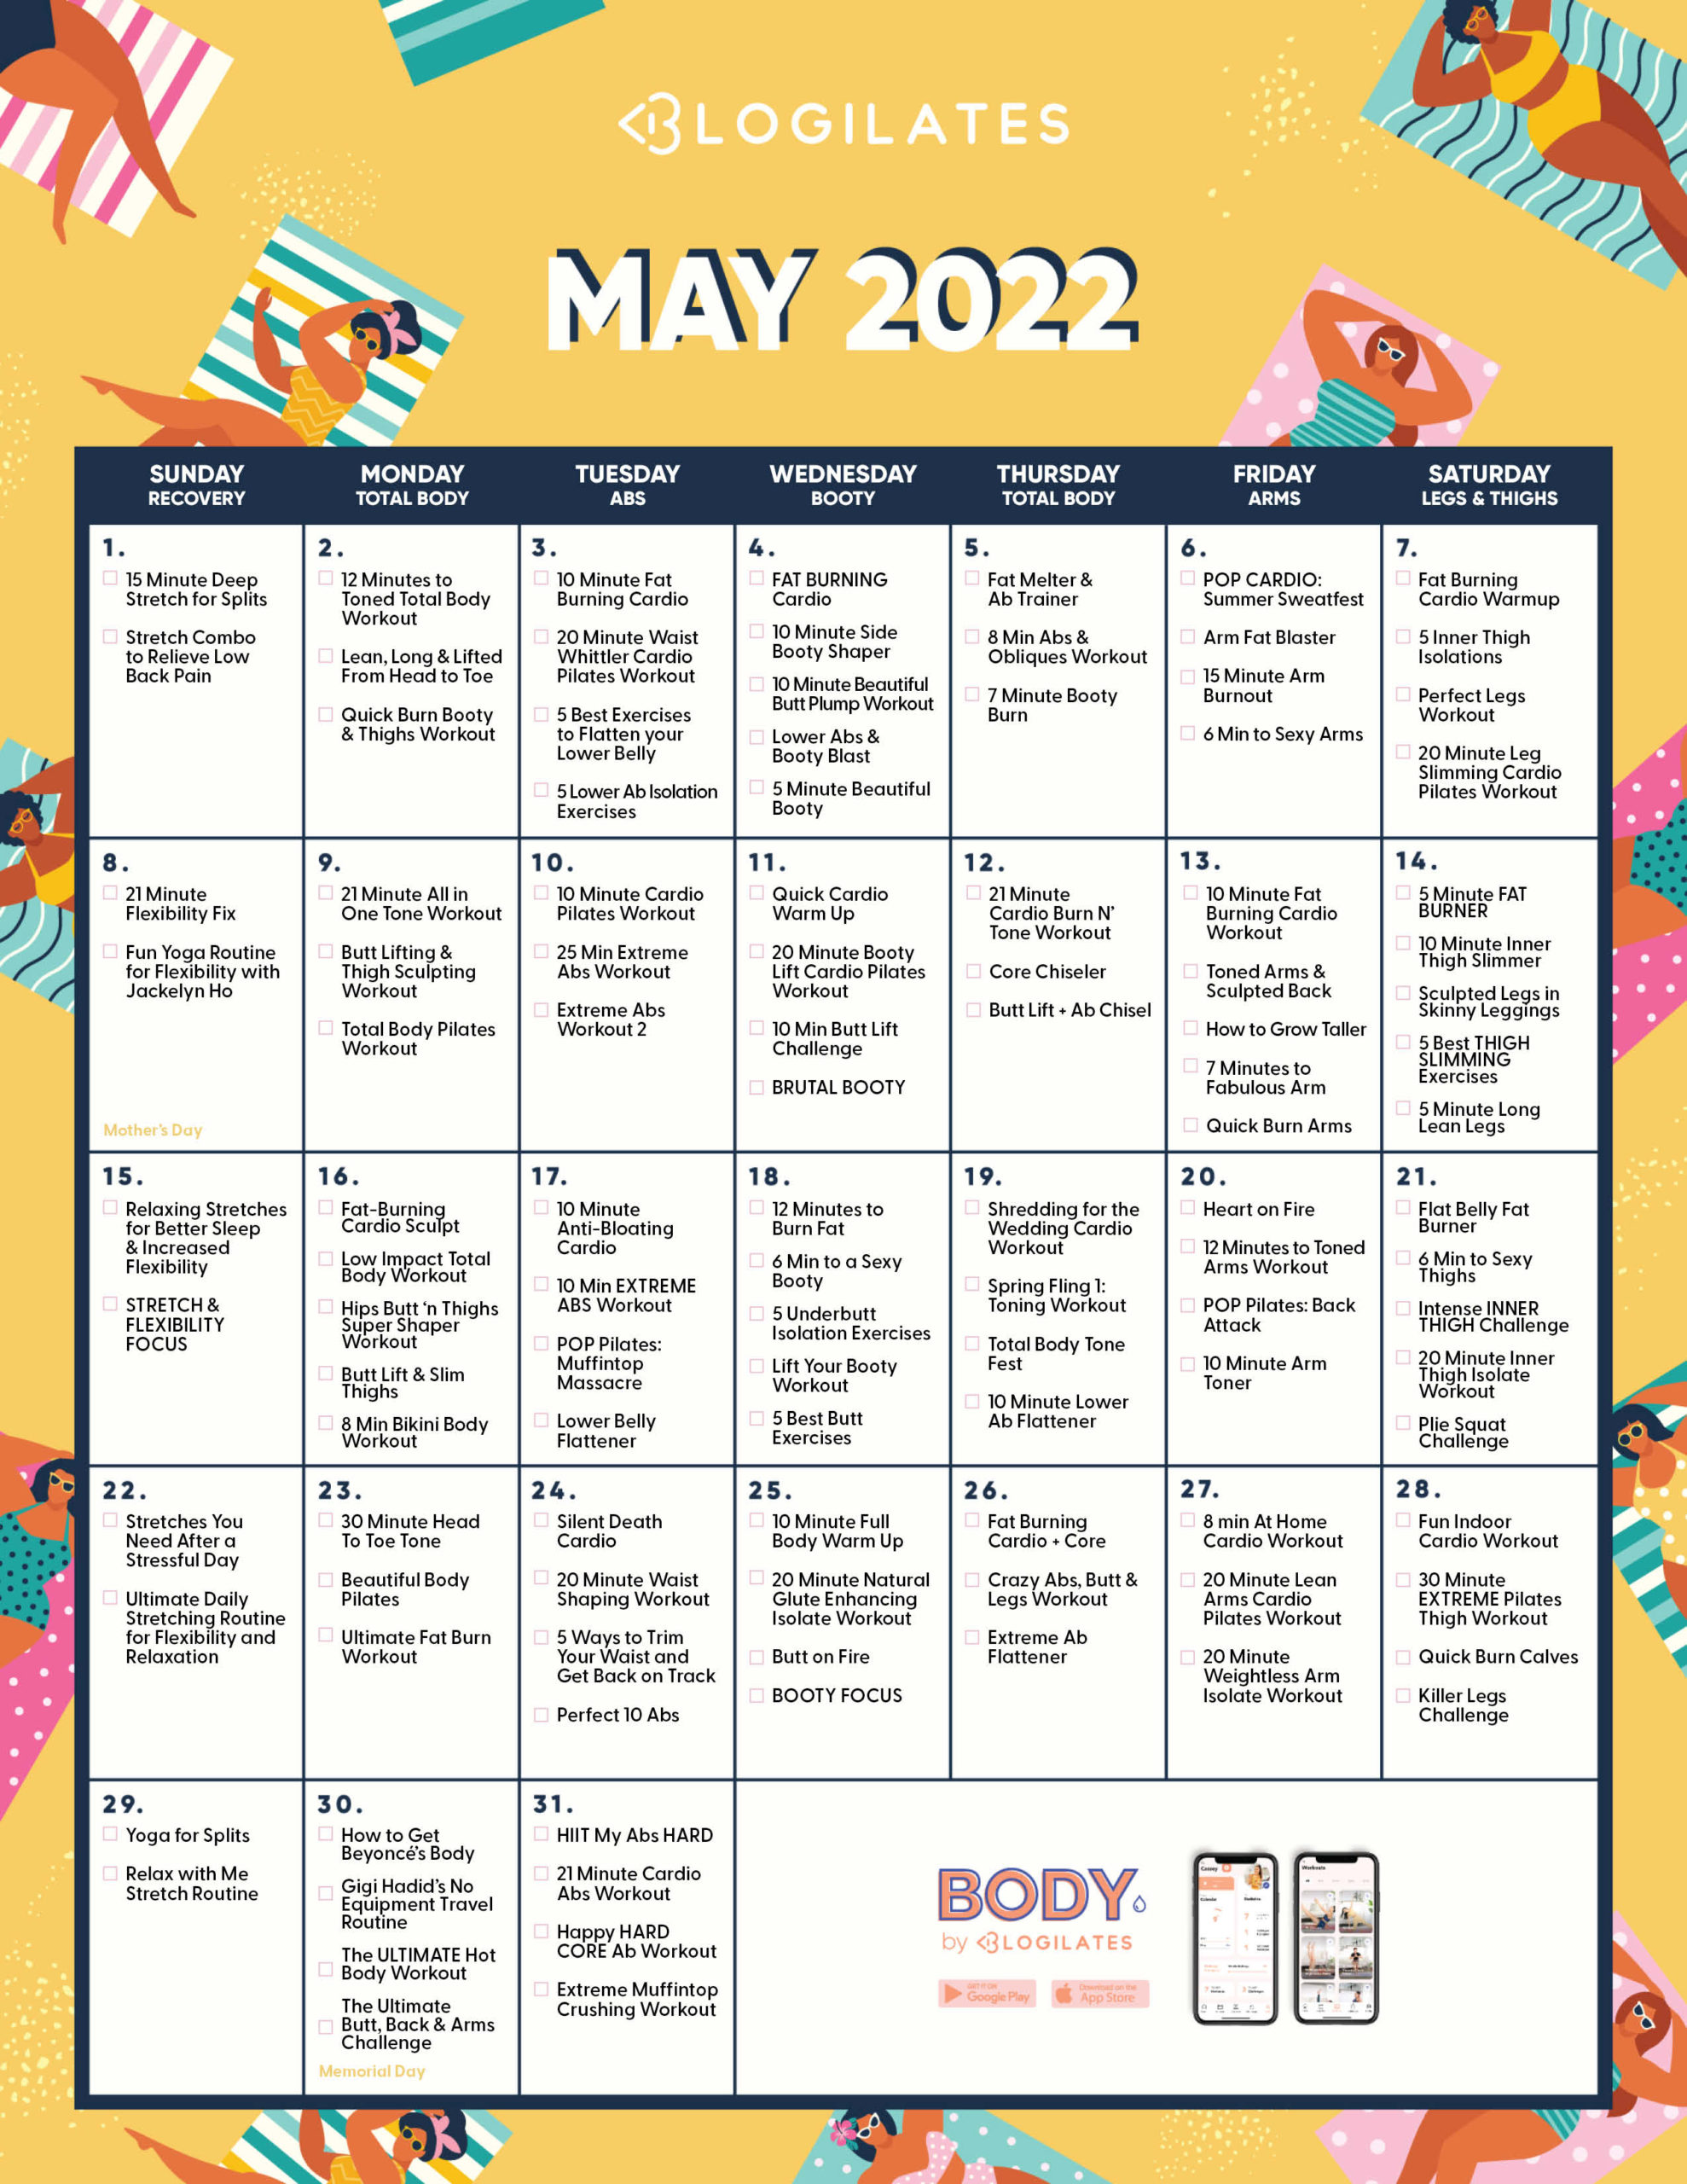 The Blogilates May 2022 Workout Calendar!